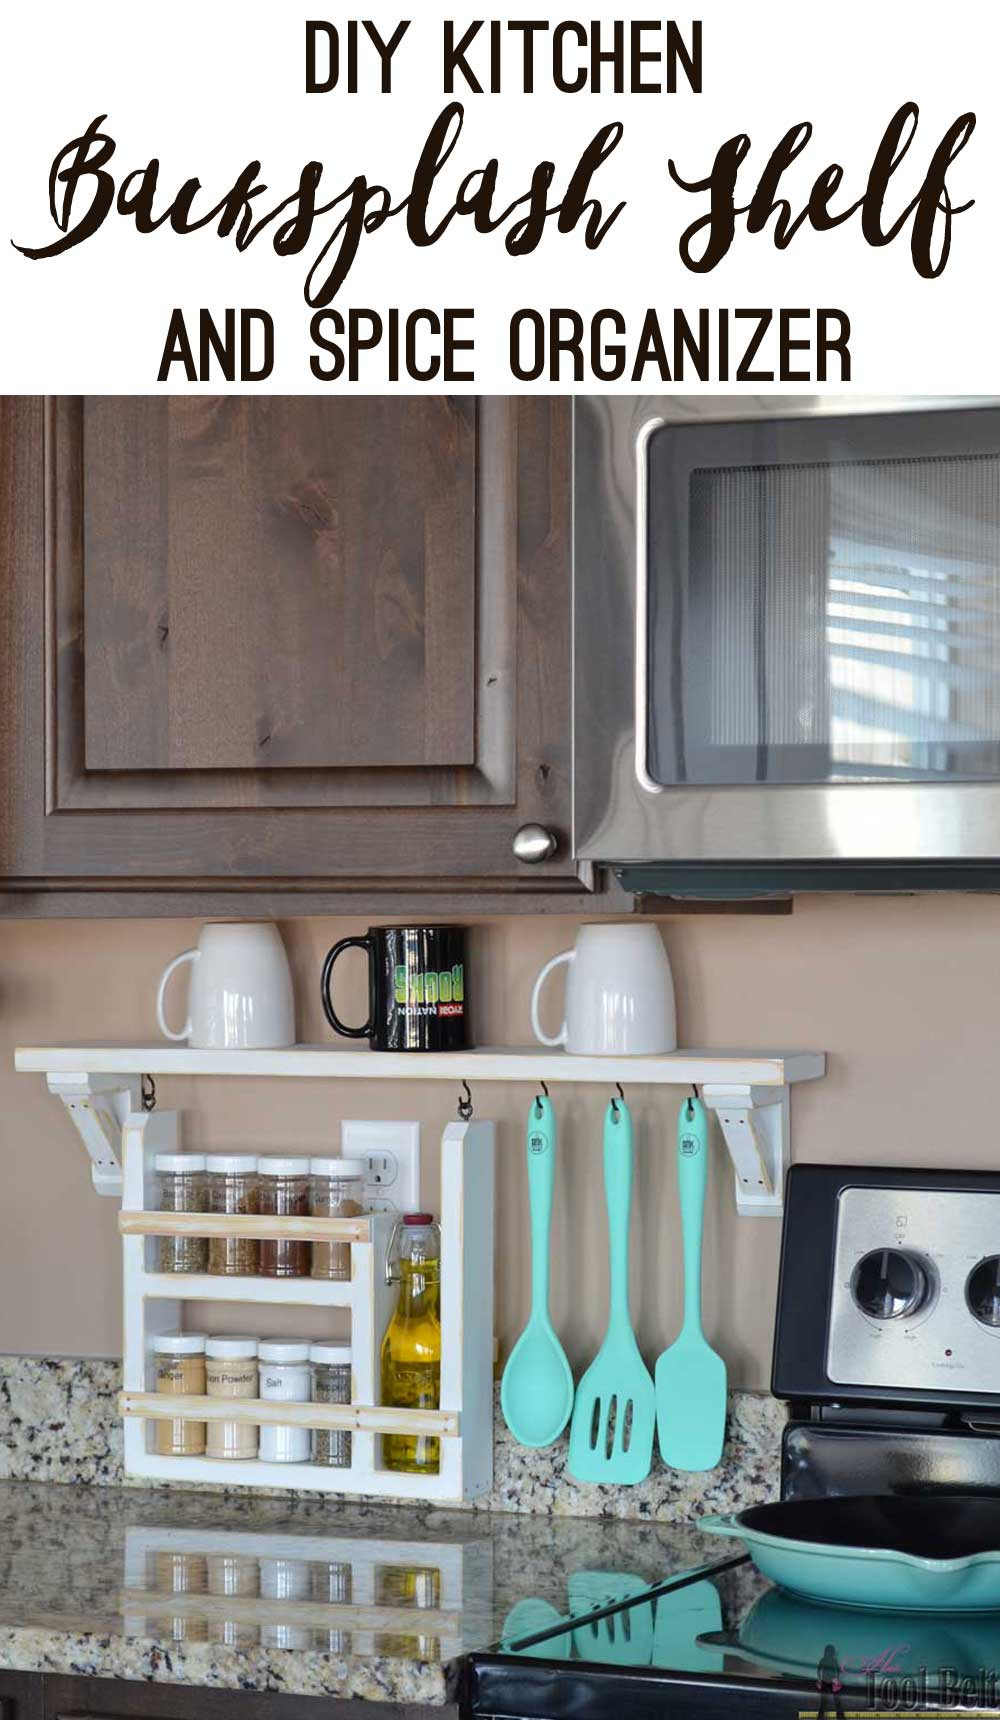 Diy Kitchen Cabinet Organizers
 Kitchen Backsplash Shelf and Organizer Her Tool Belt